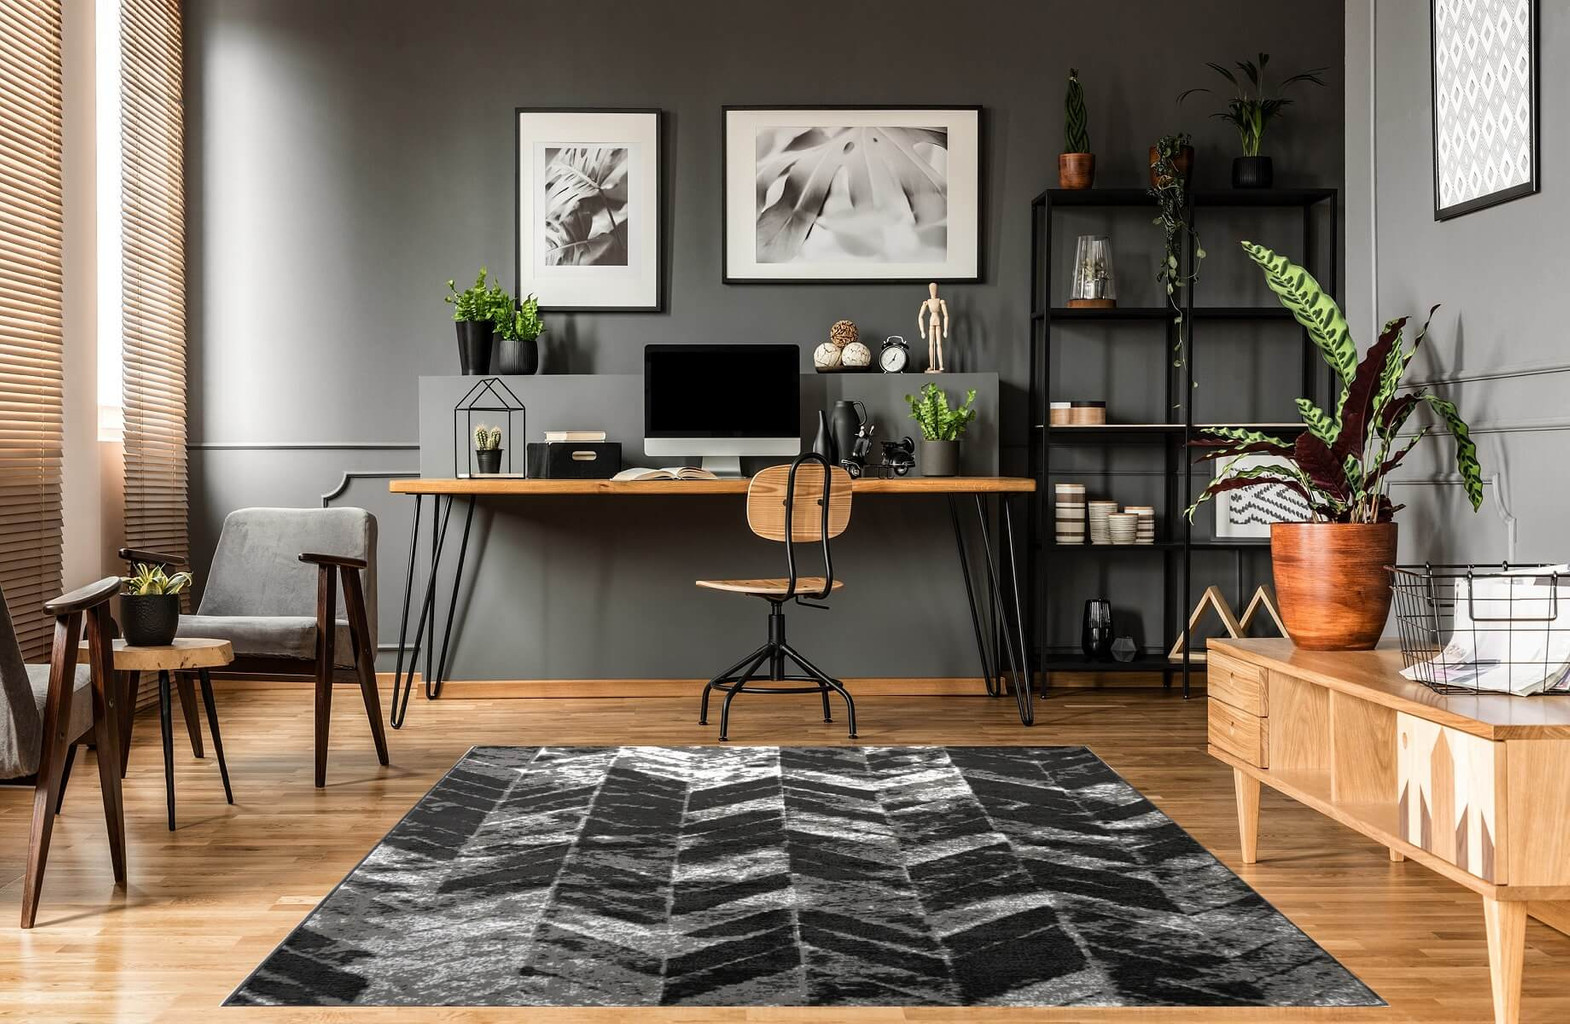 Moderní tmavě šedý koberec Almas 26, imitace opotřebení, do pokoje, vzor rybí kost - Carpetforyou obrázek 2